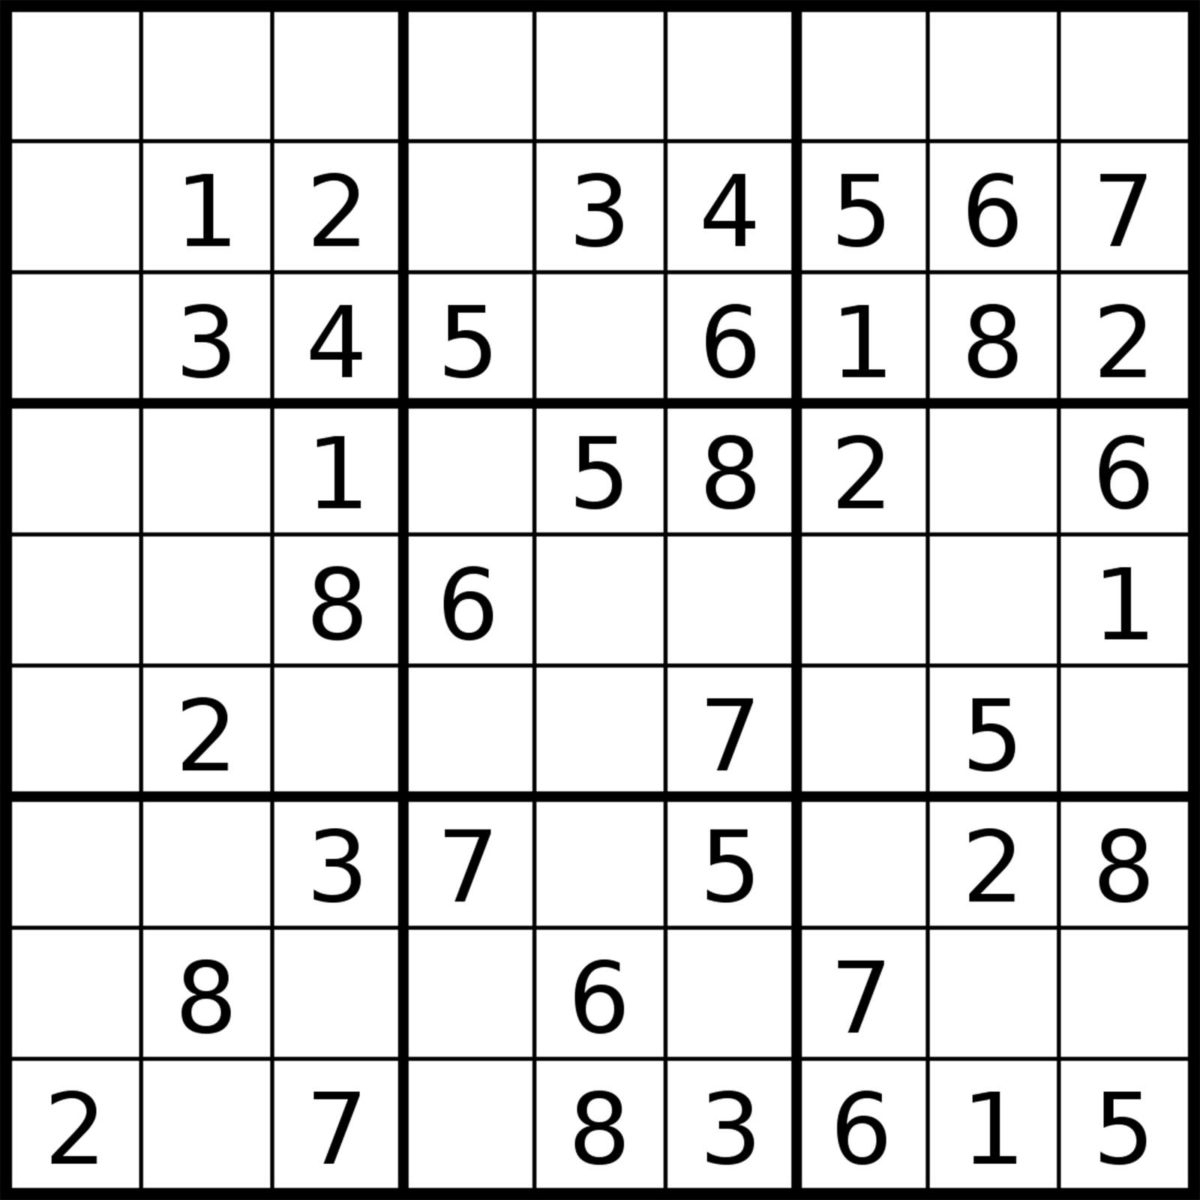 Les Jeux De Sudoku Pour L'été - Family Sphere - Garde D à Jeu Le Sudoku